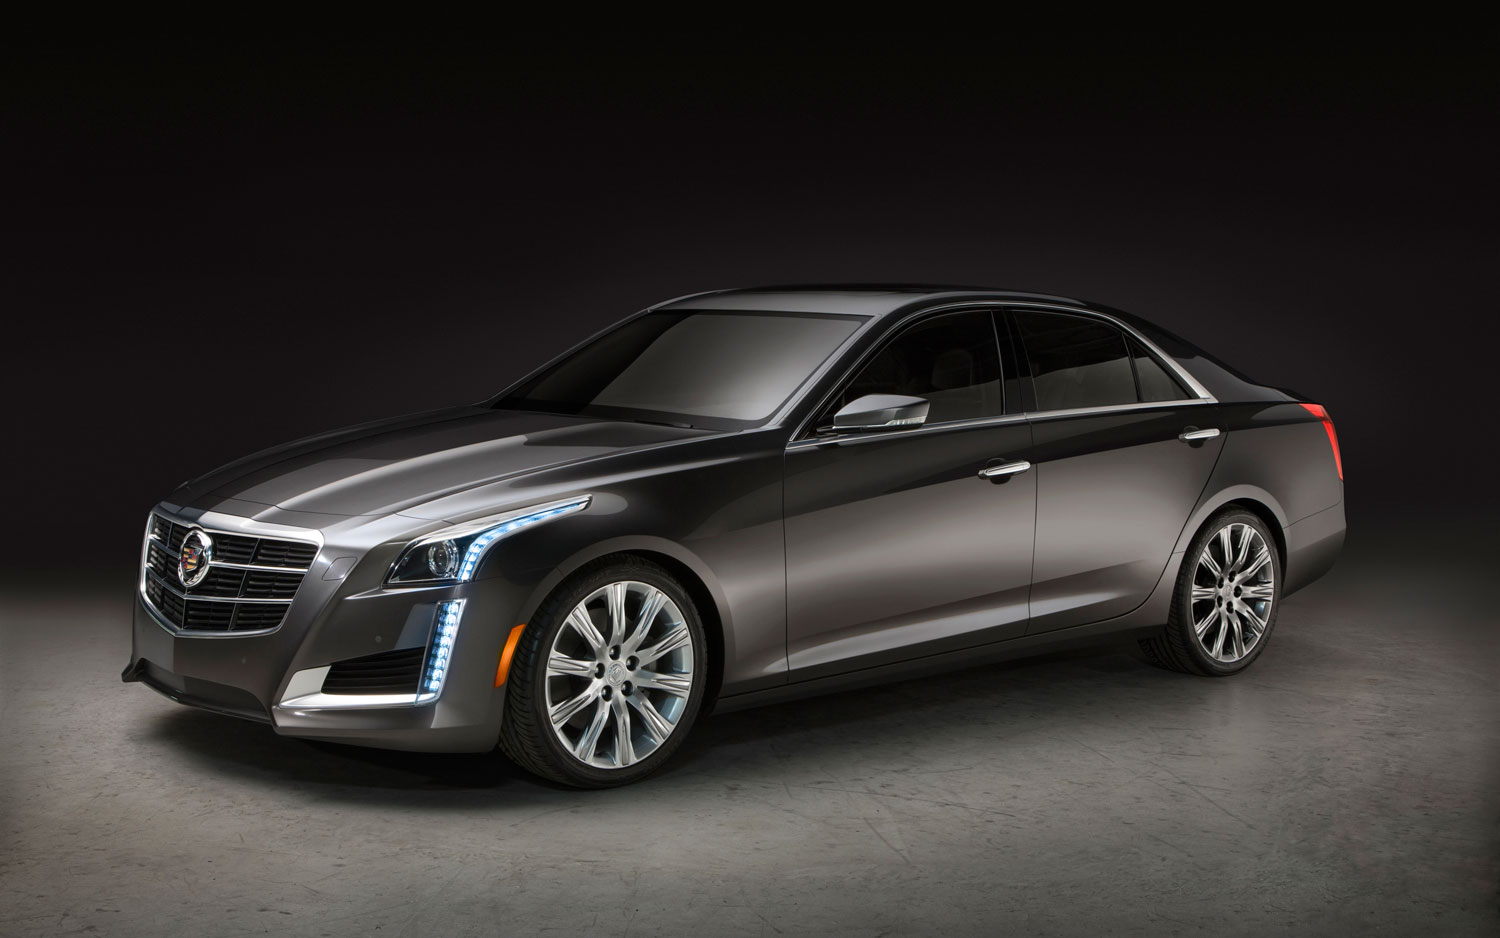 2014 Cadillac CTS Sedan  New cars reviews